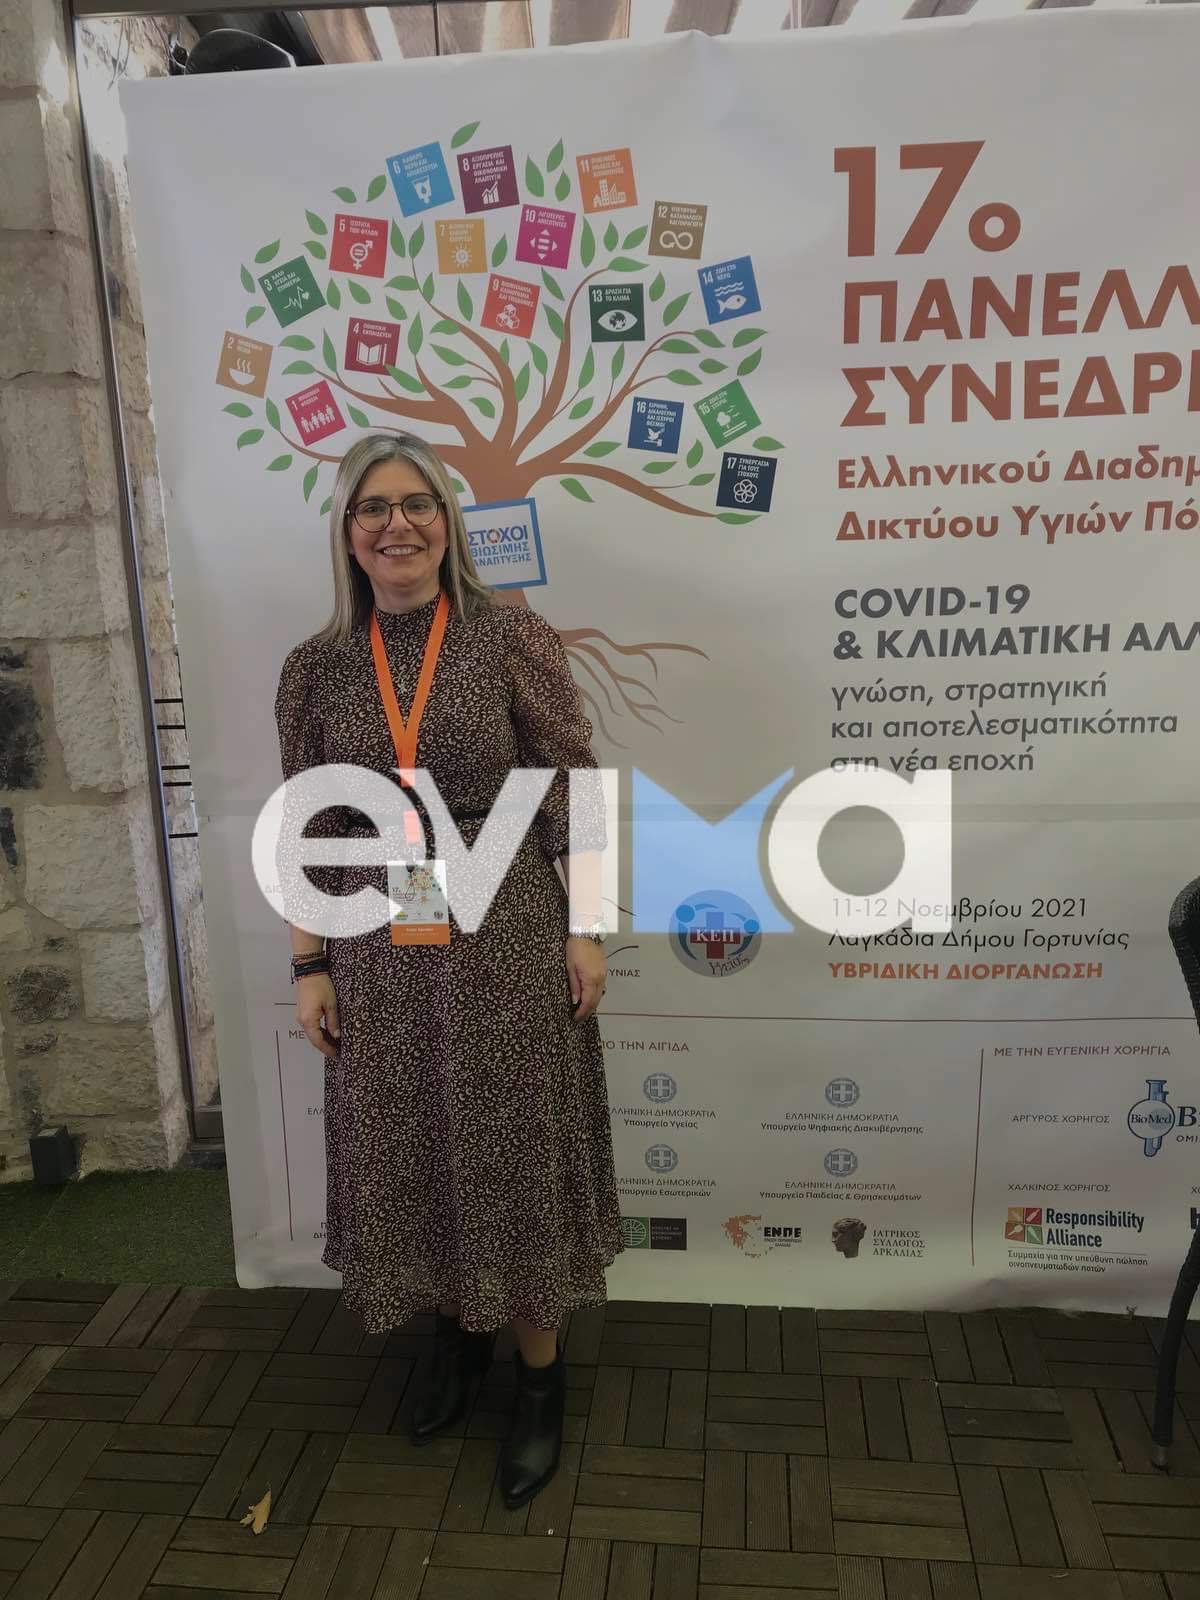 Ο Δήμος Διρφύων Μεσσαπίων βραβεύτηκε για την ίδρυση του ΚΕΠ Υγείας